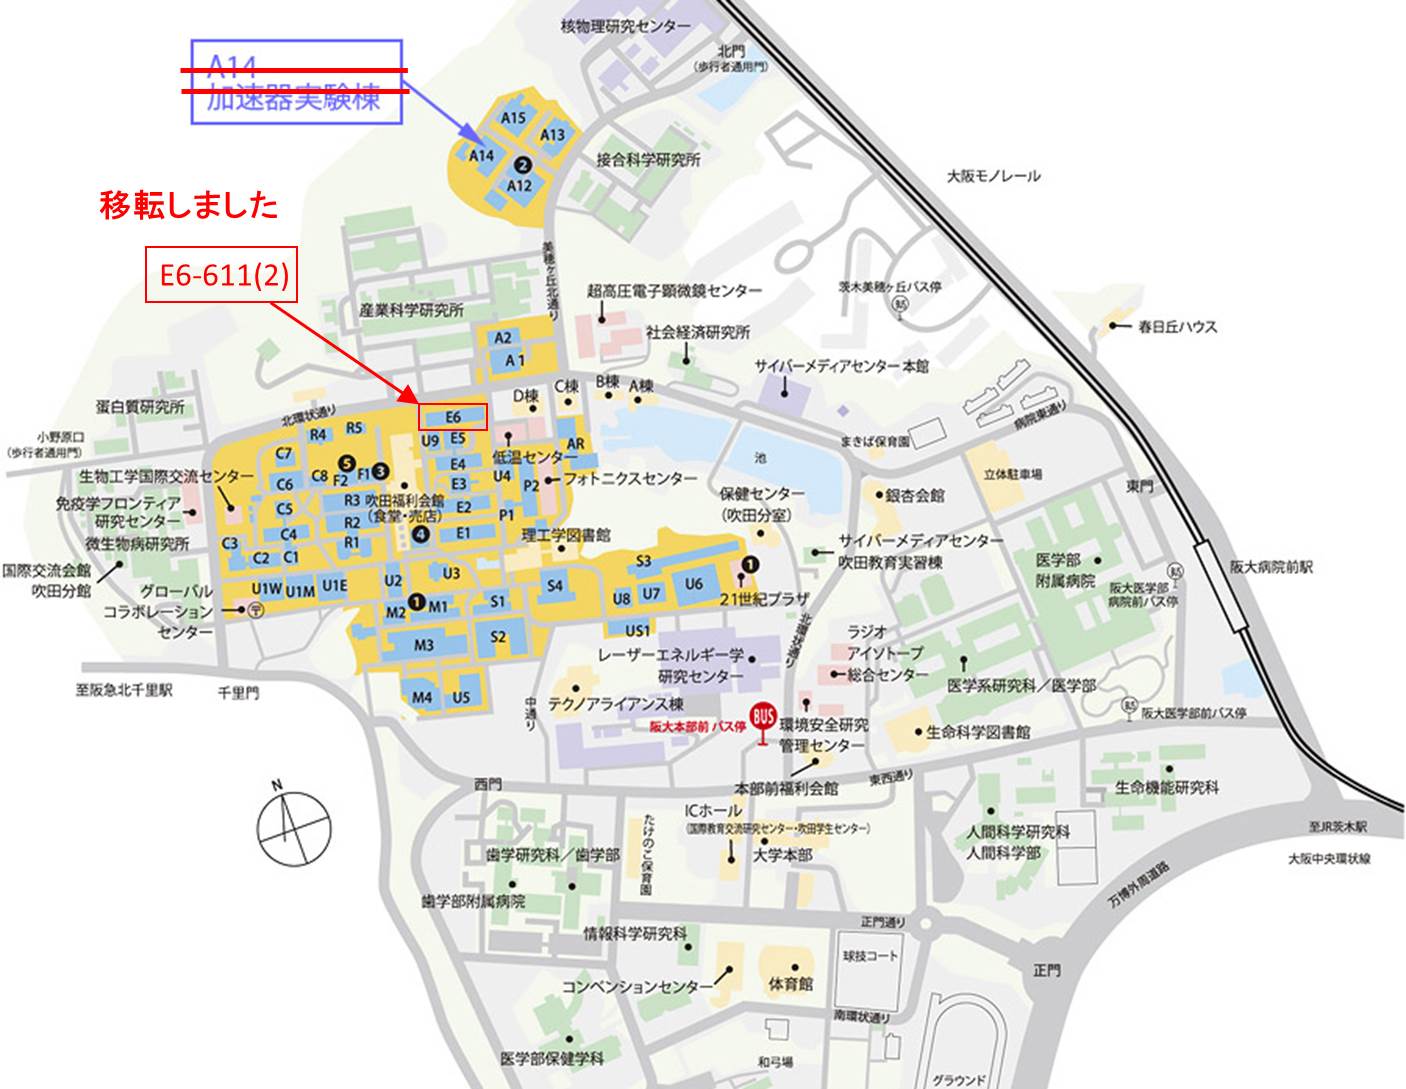 キャンパス内のマップ